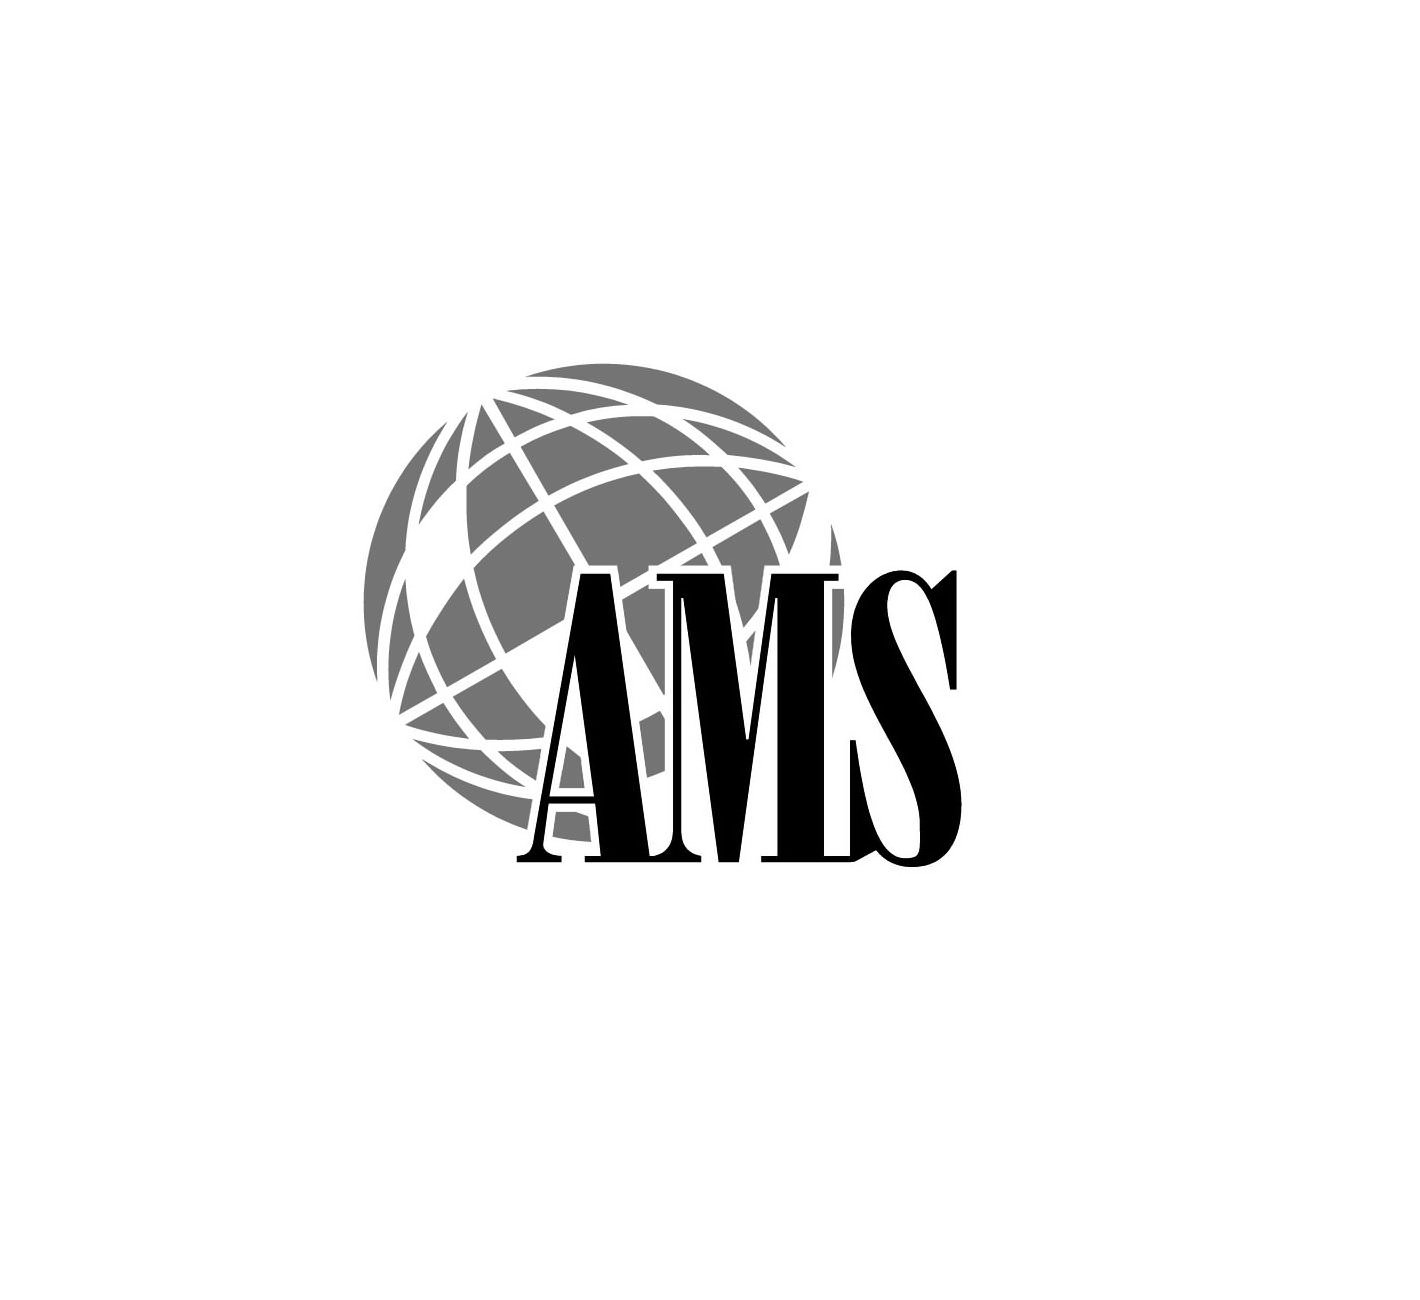 Trademark Logo AMS